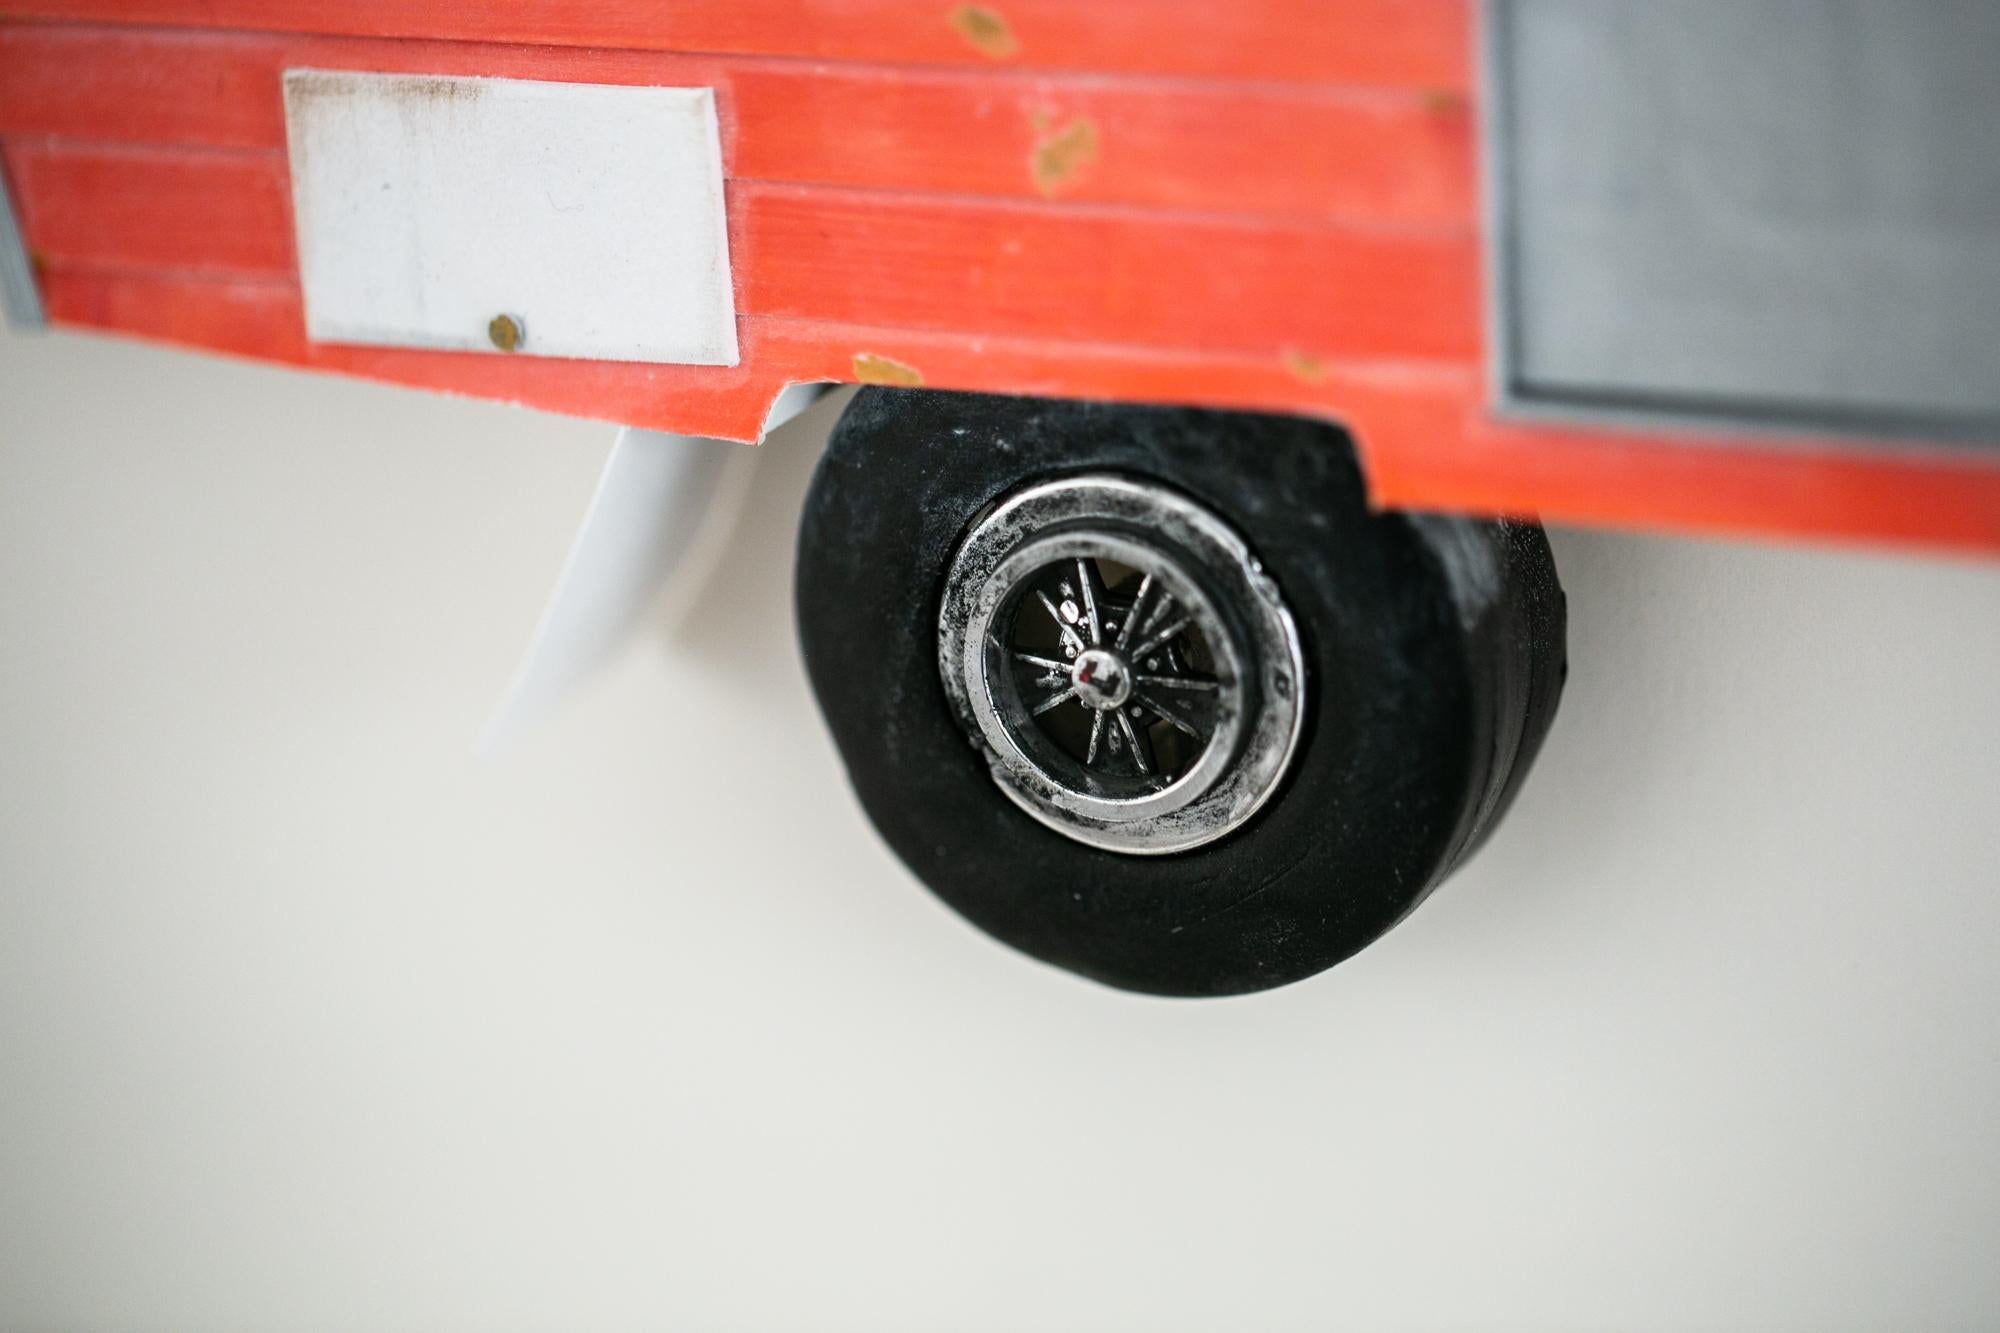 « OVER IT », miniature, chariot de camping van, sculpture en papier - Sculpture de Drew Leshko